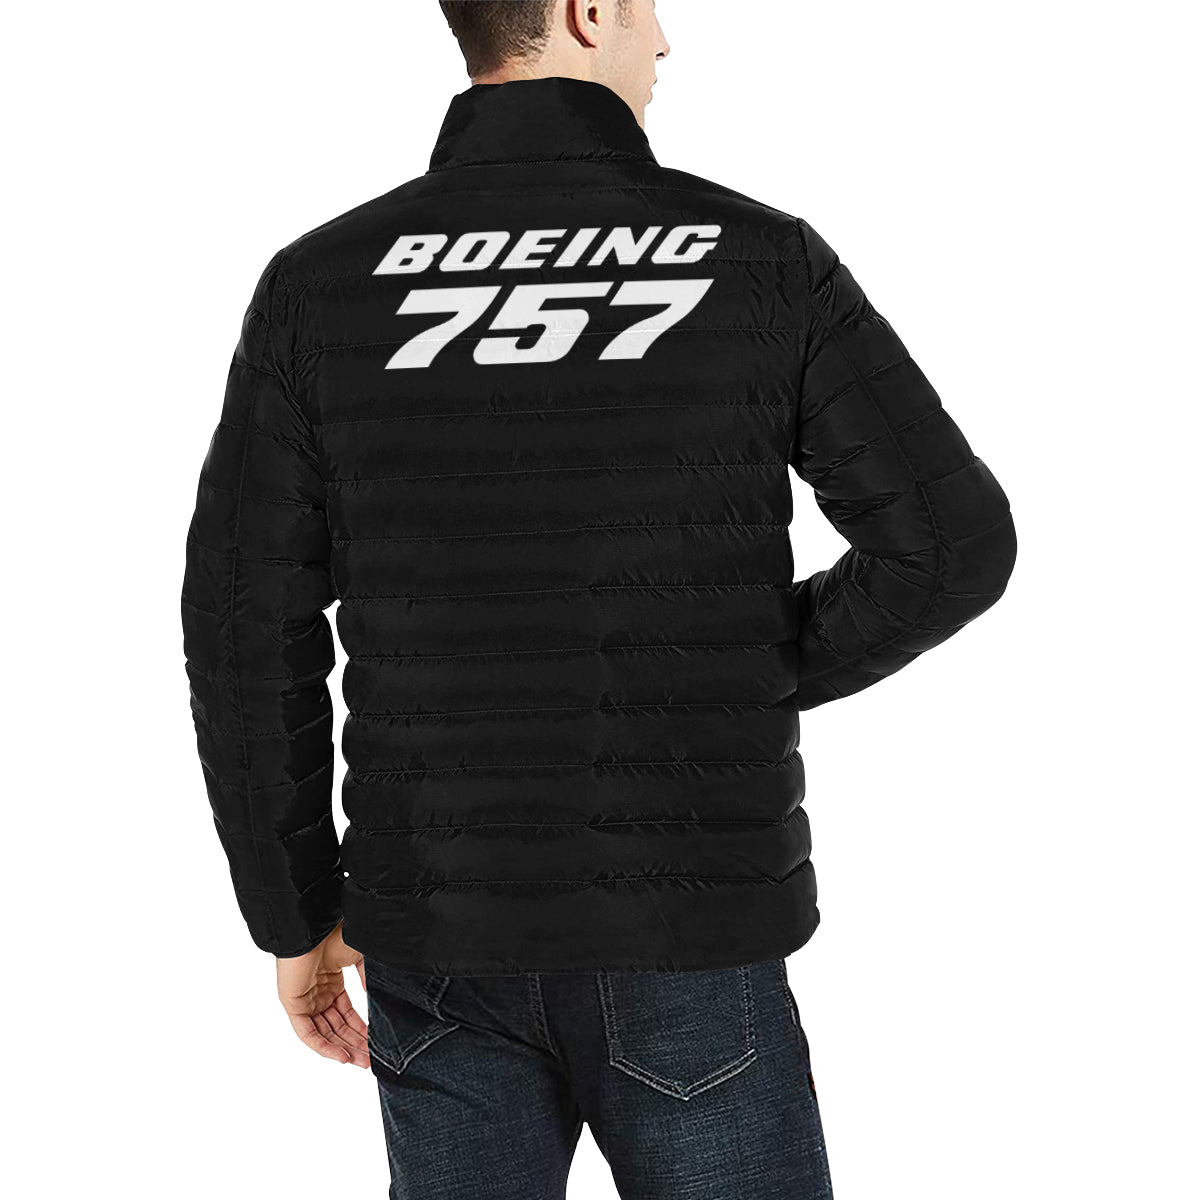 BOEING 757 Men's Stand Collar Padded Jacket e-joyer